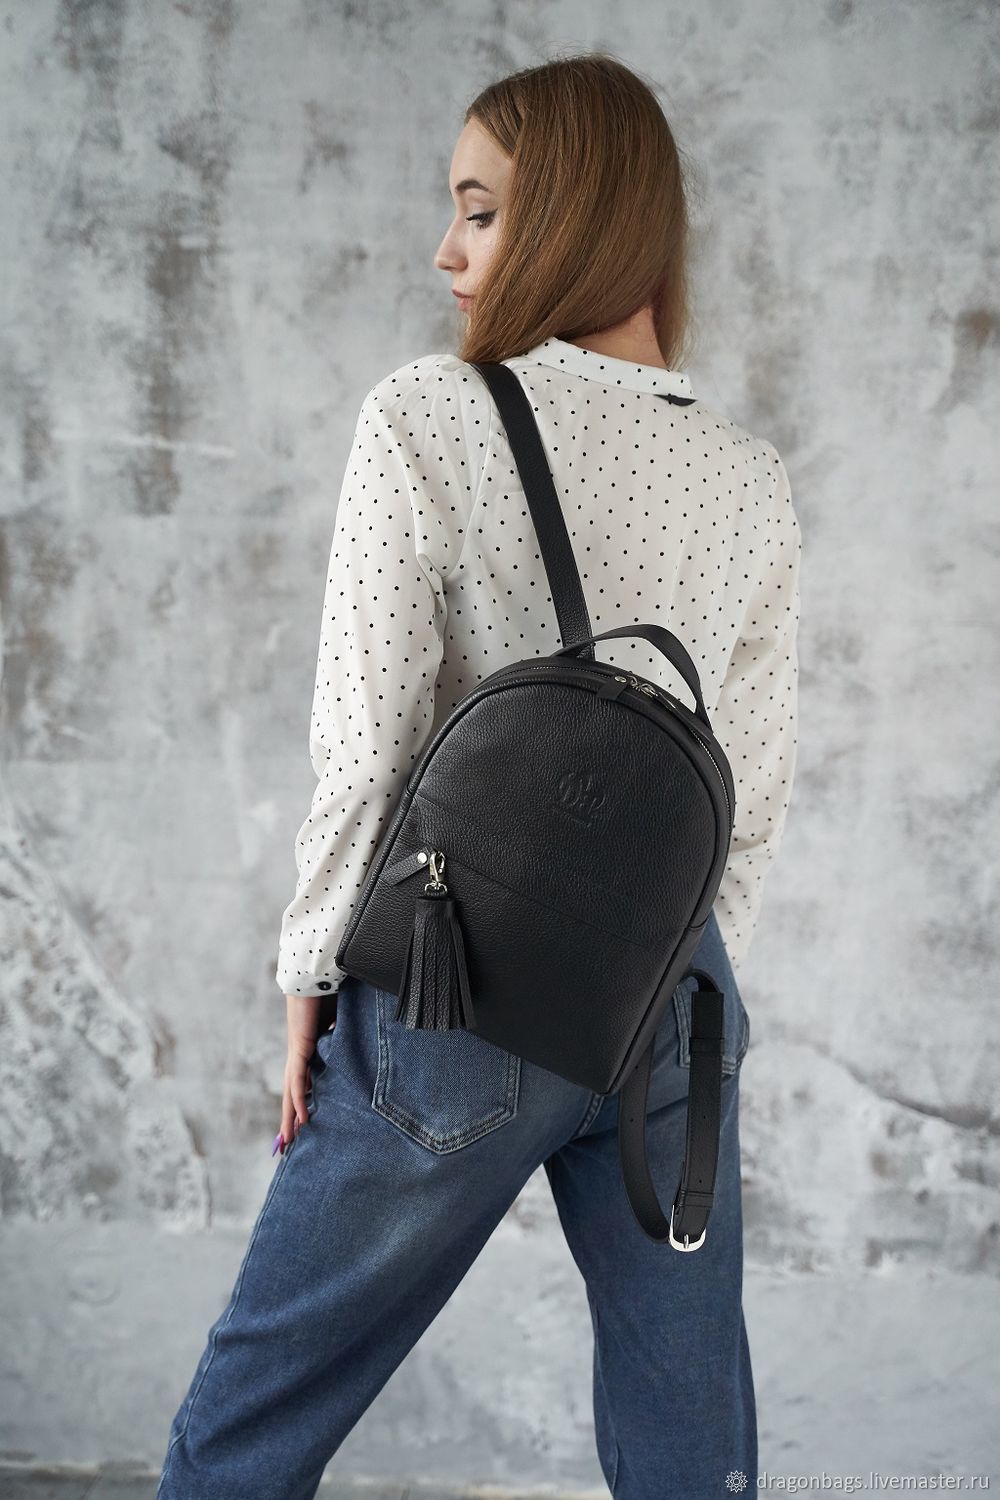 Women's leather backpack 'Ammo' (Black), Backpacks, Yaroslavl,  Фото №1